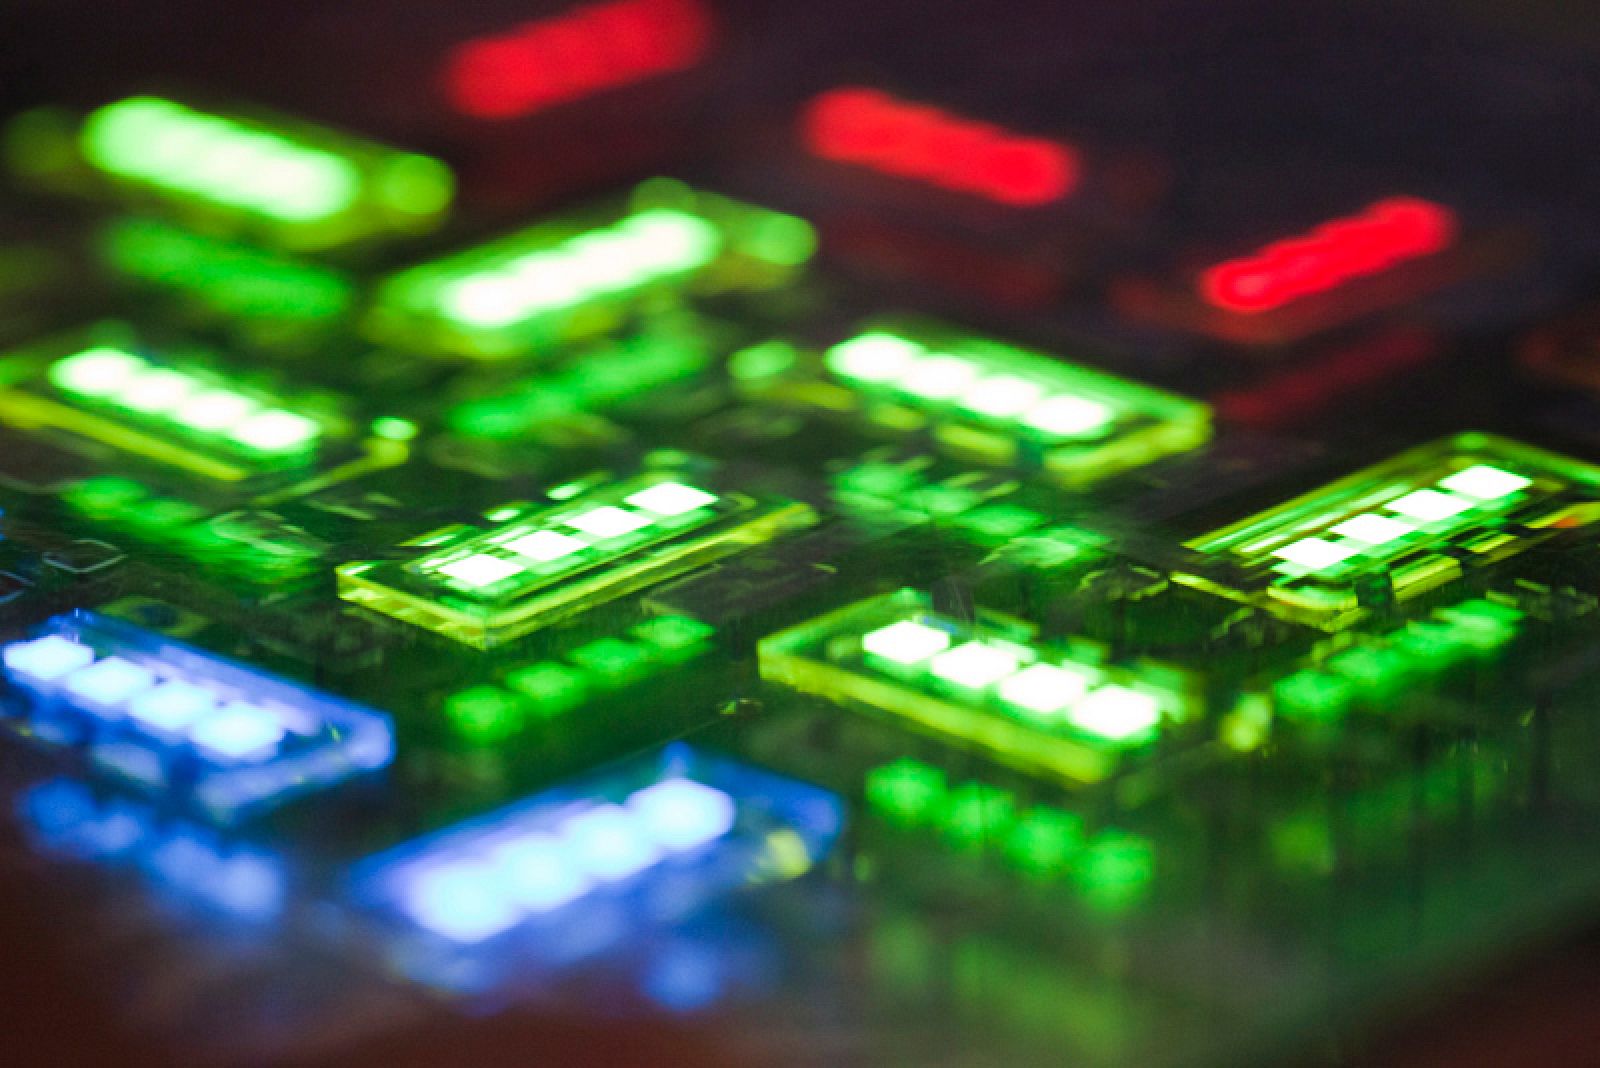 Una pantalla OLED con píxeles rojos, verdes y azules, en una superficie de 2x2 milímetros, con materiales de prueba.